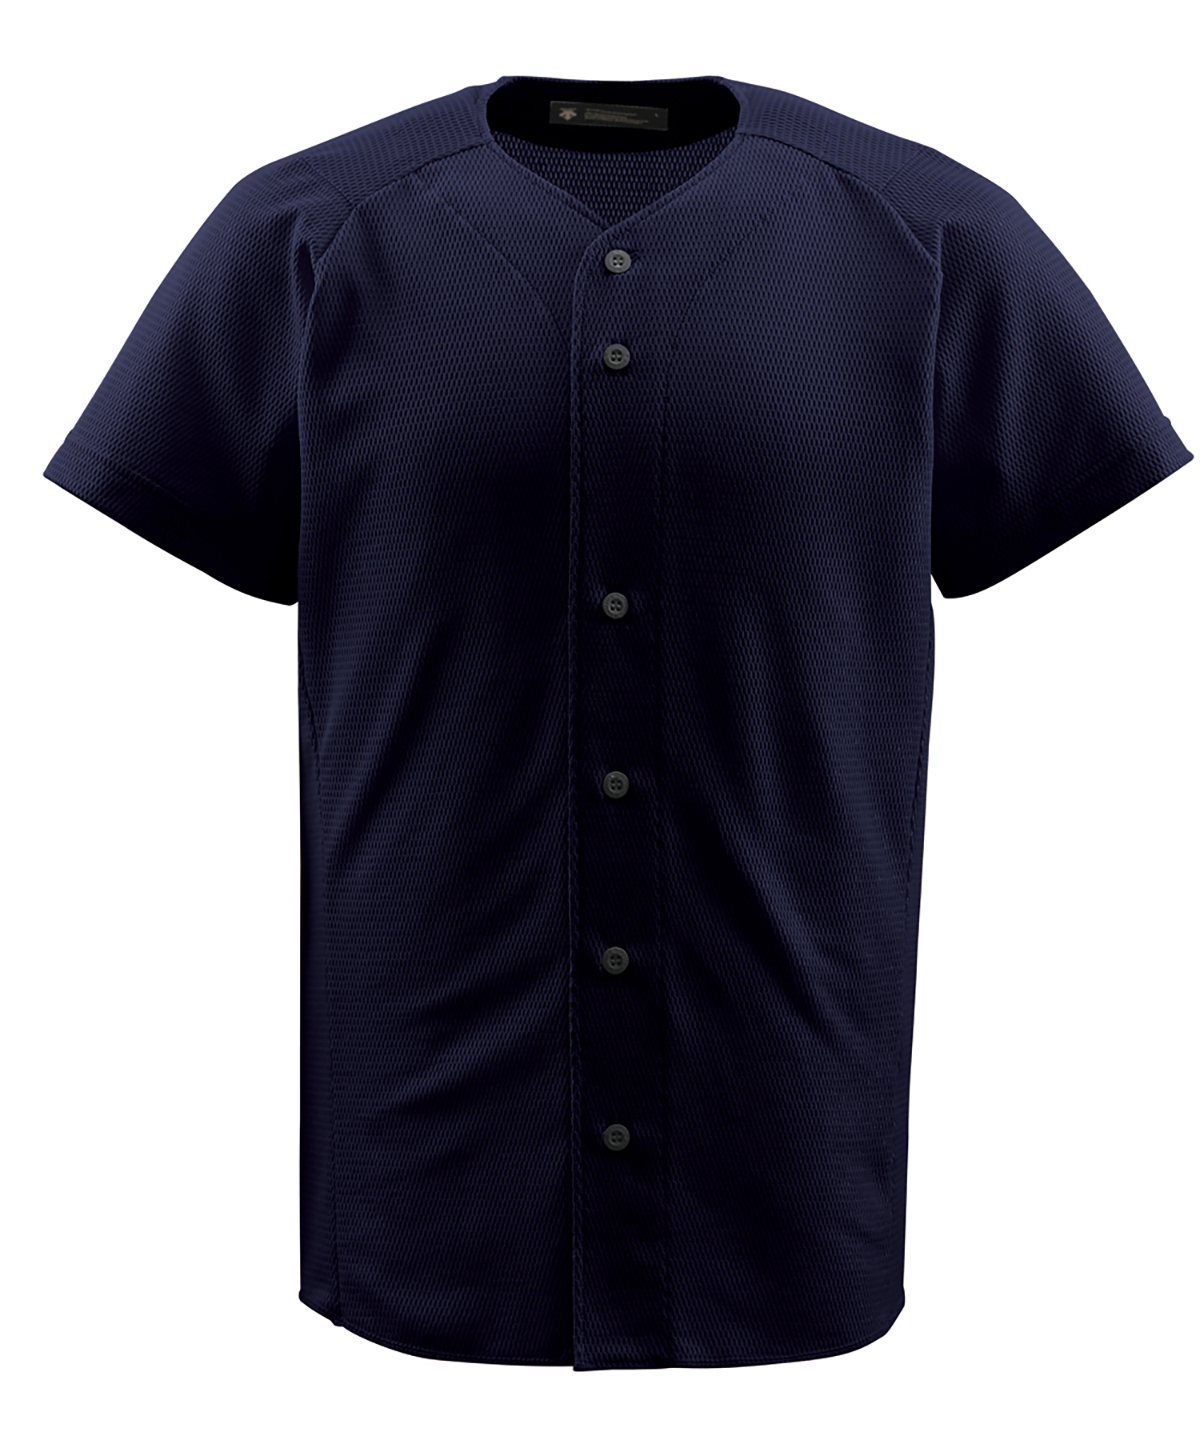  デサント DESCENTE フルオープンシャツ DB-1010 シャツ オープンシャツ トップス 練習 練習着 試合 軽量 着心地 快適 部活 通気性 DB1010 SLV